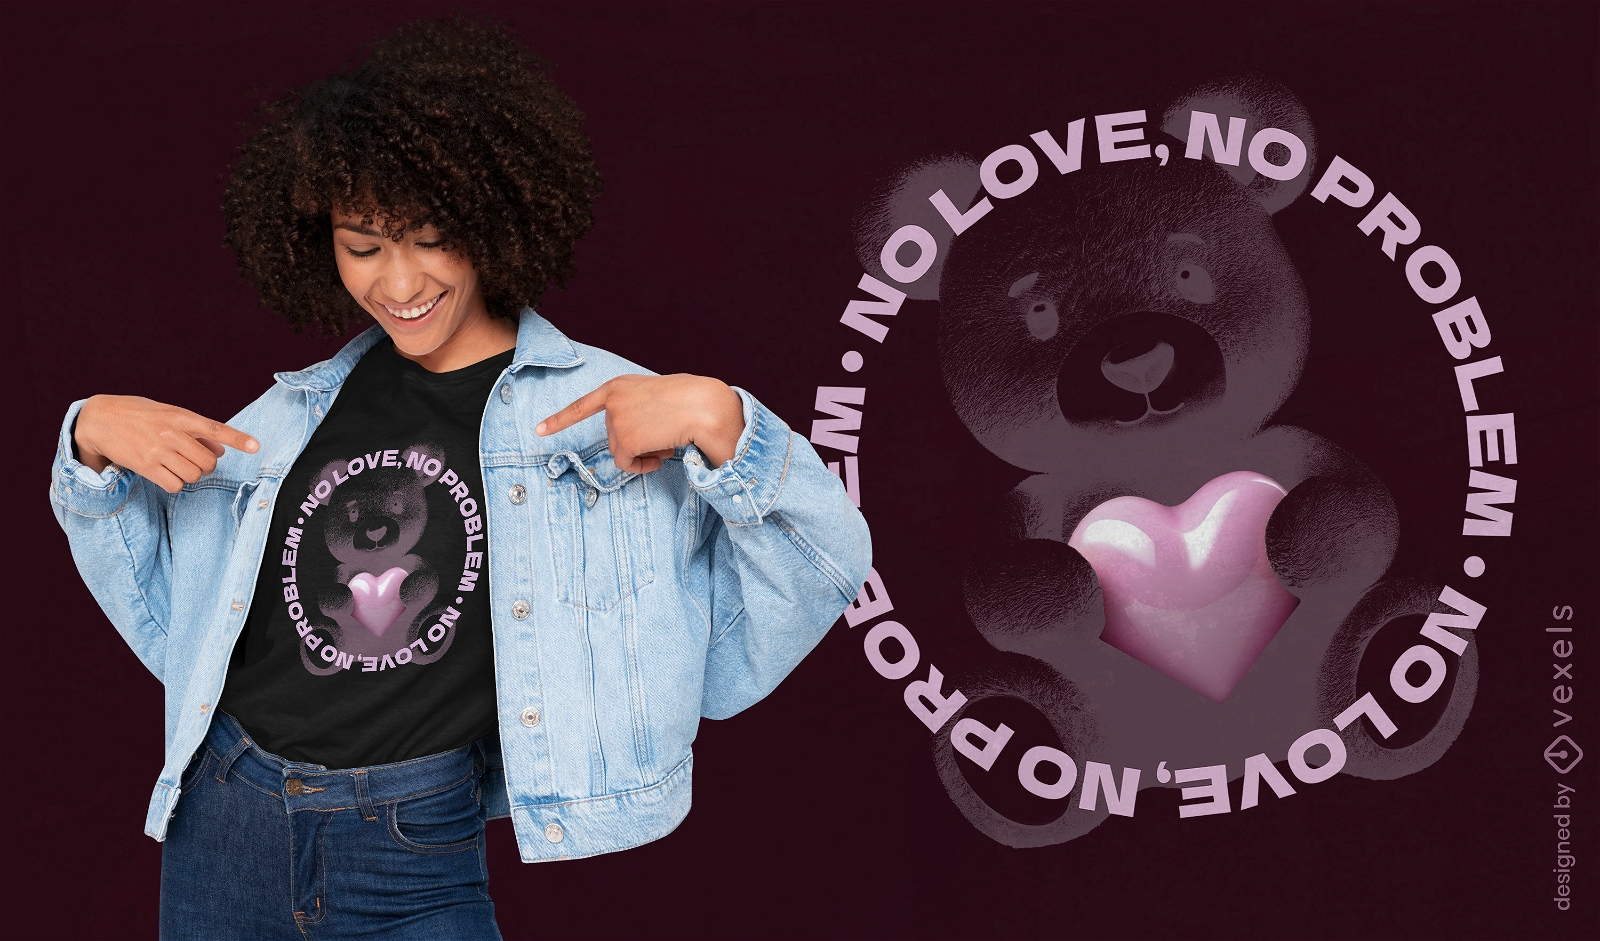 Diseño de camiseta sin amor, sin problema.